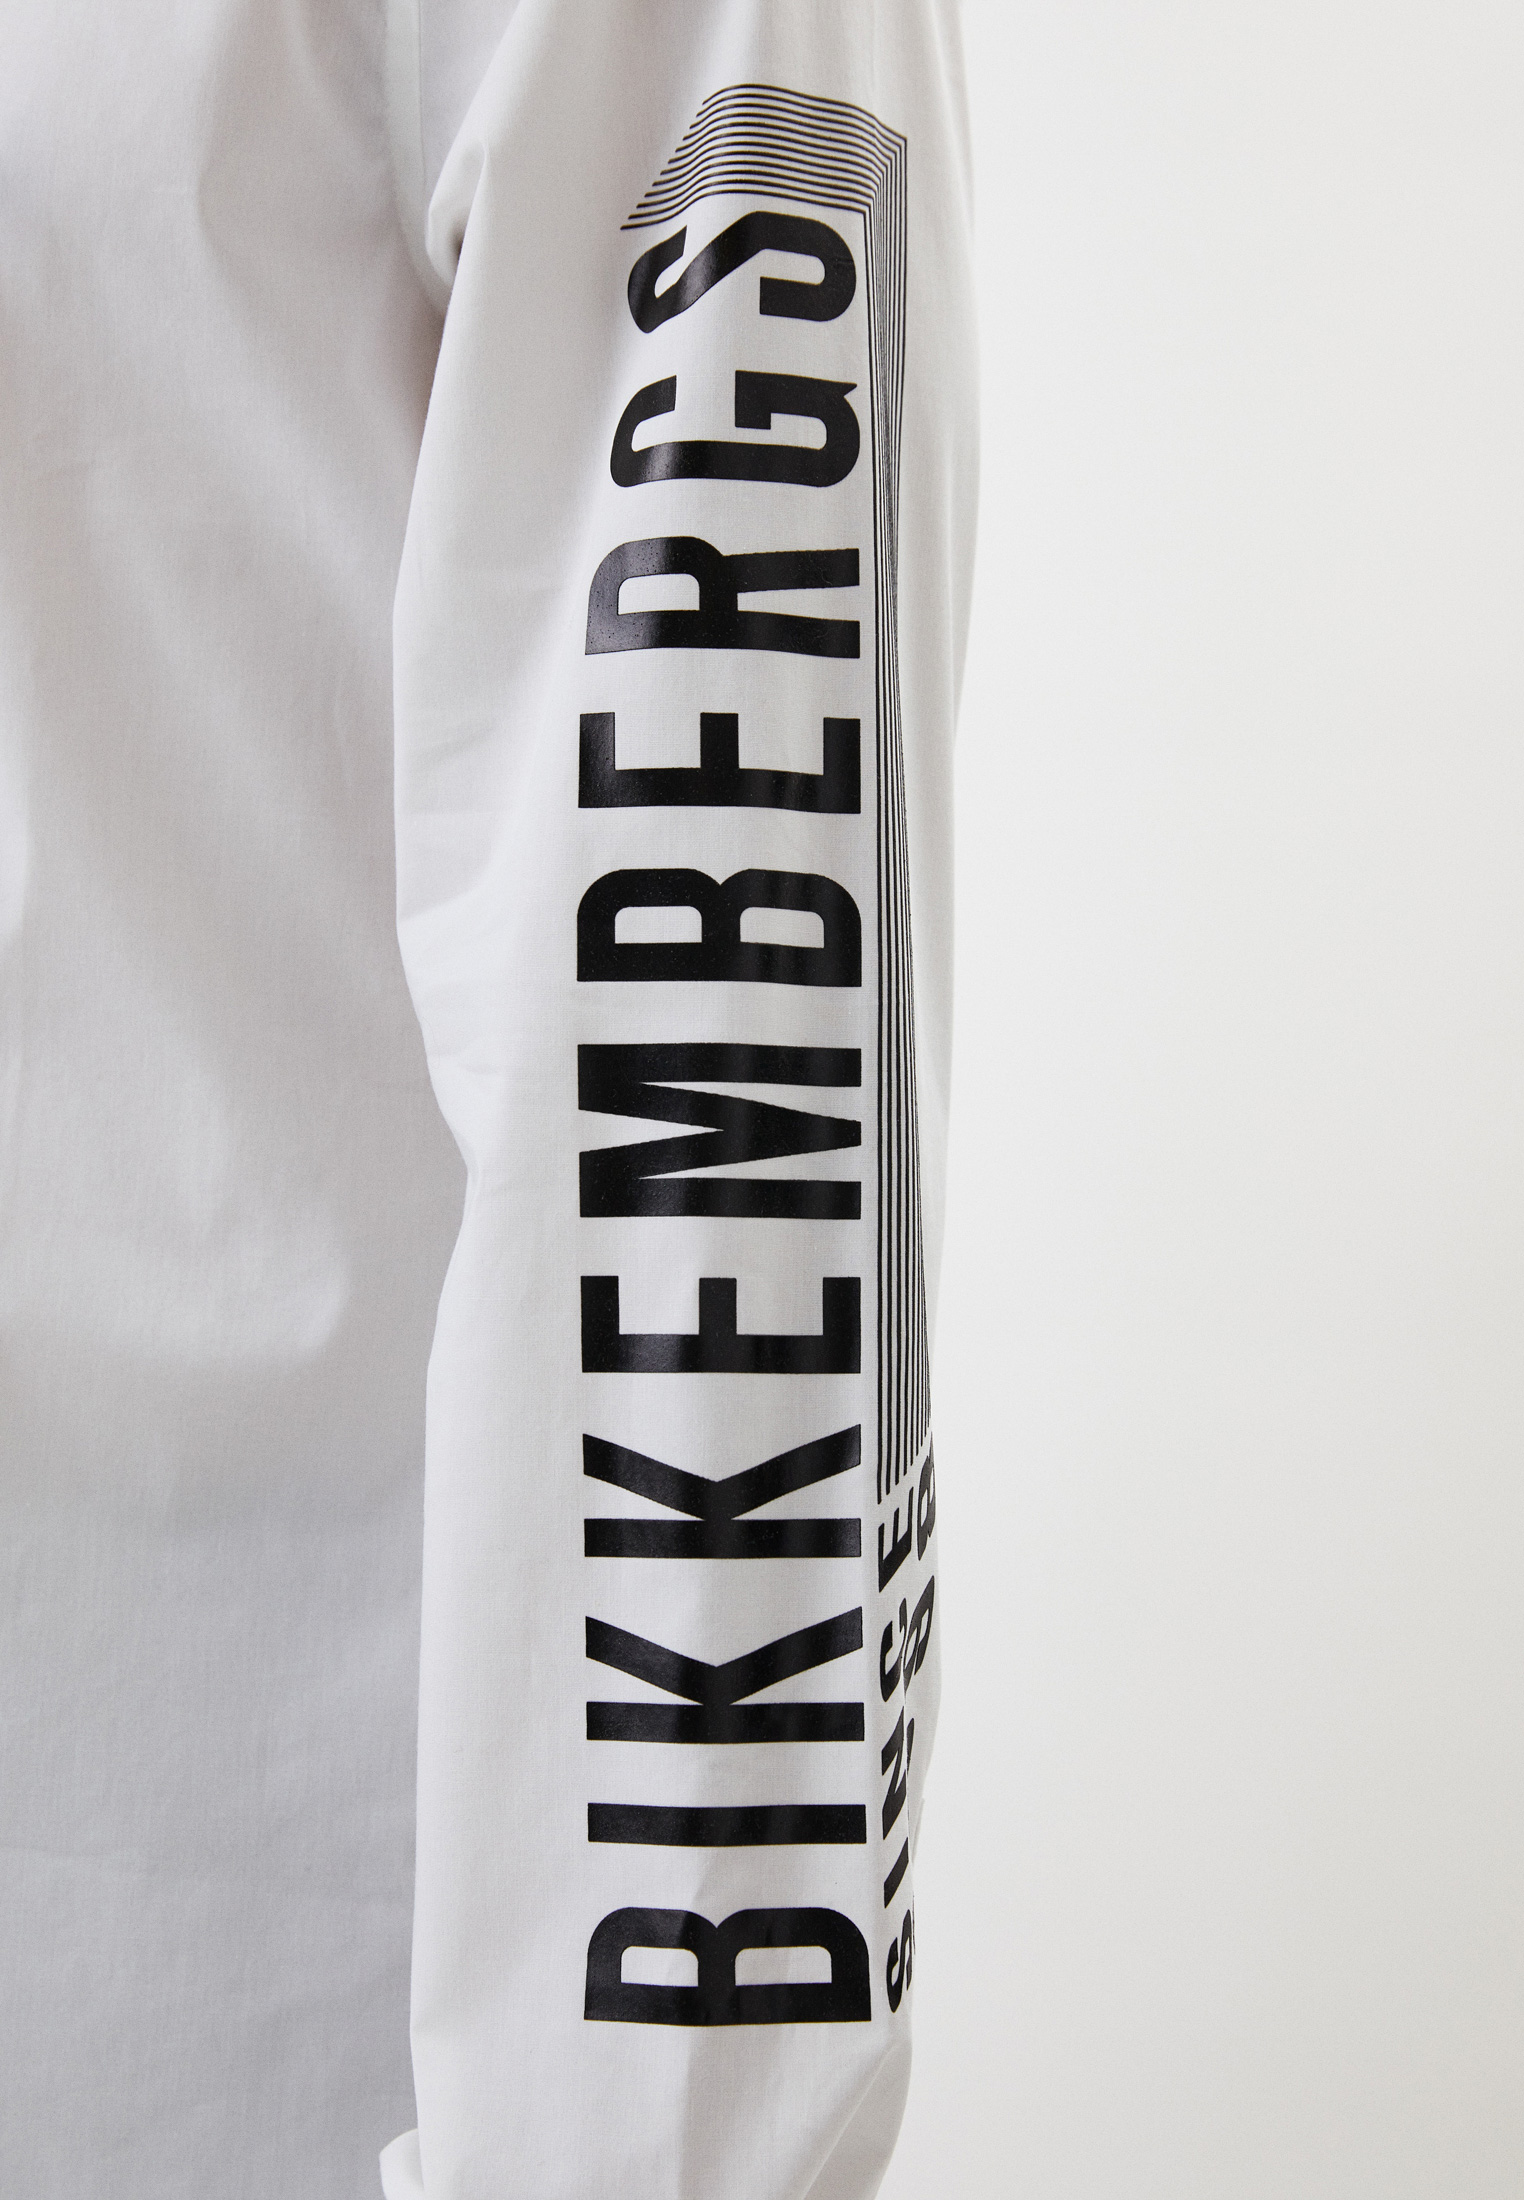 Рубашка с длинным рукавом Bikkembergs (Биккембергс) C C 095 03 S 2931: изображение 4